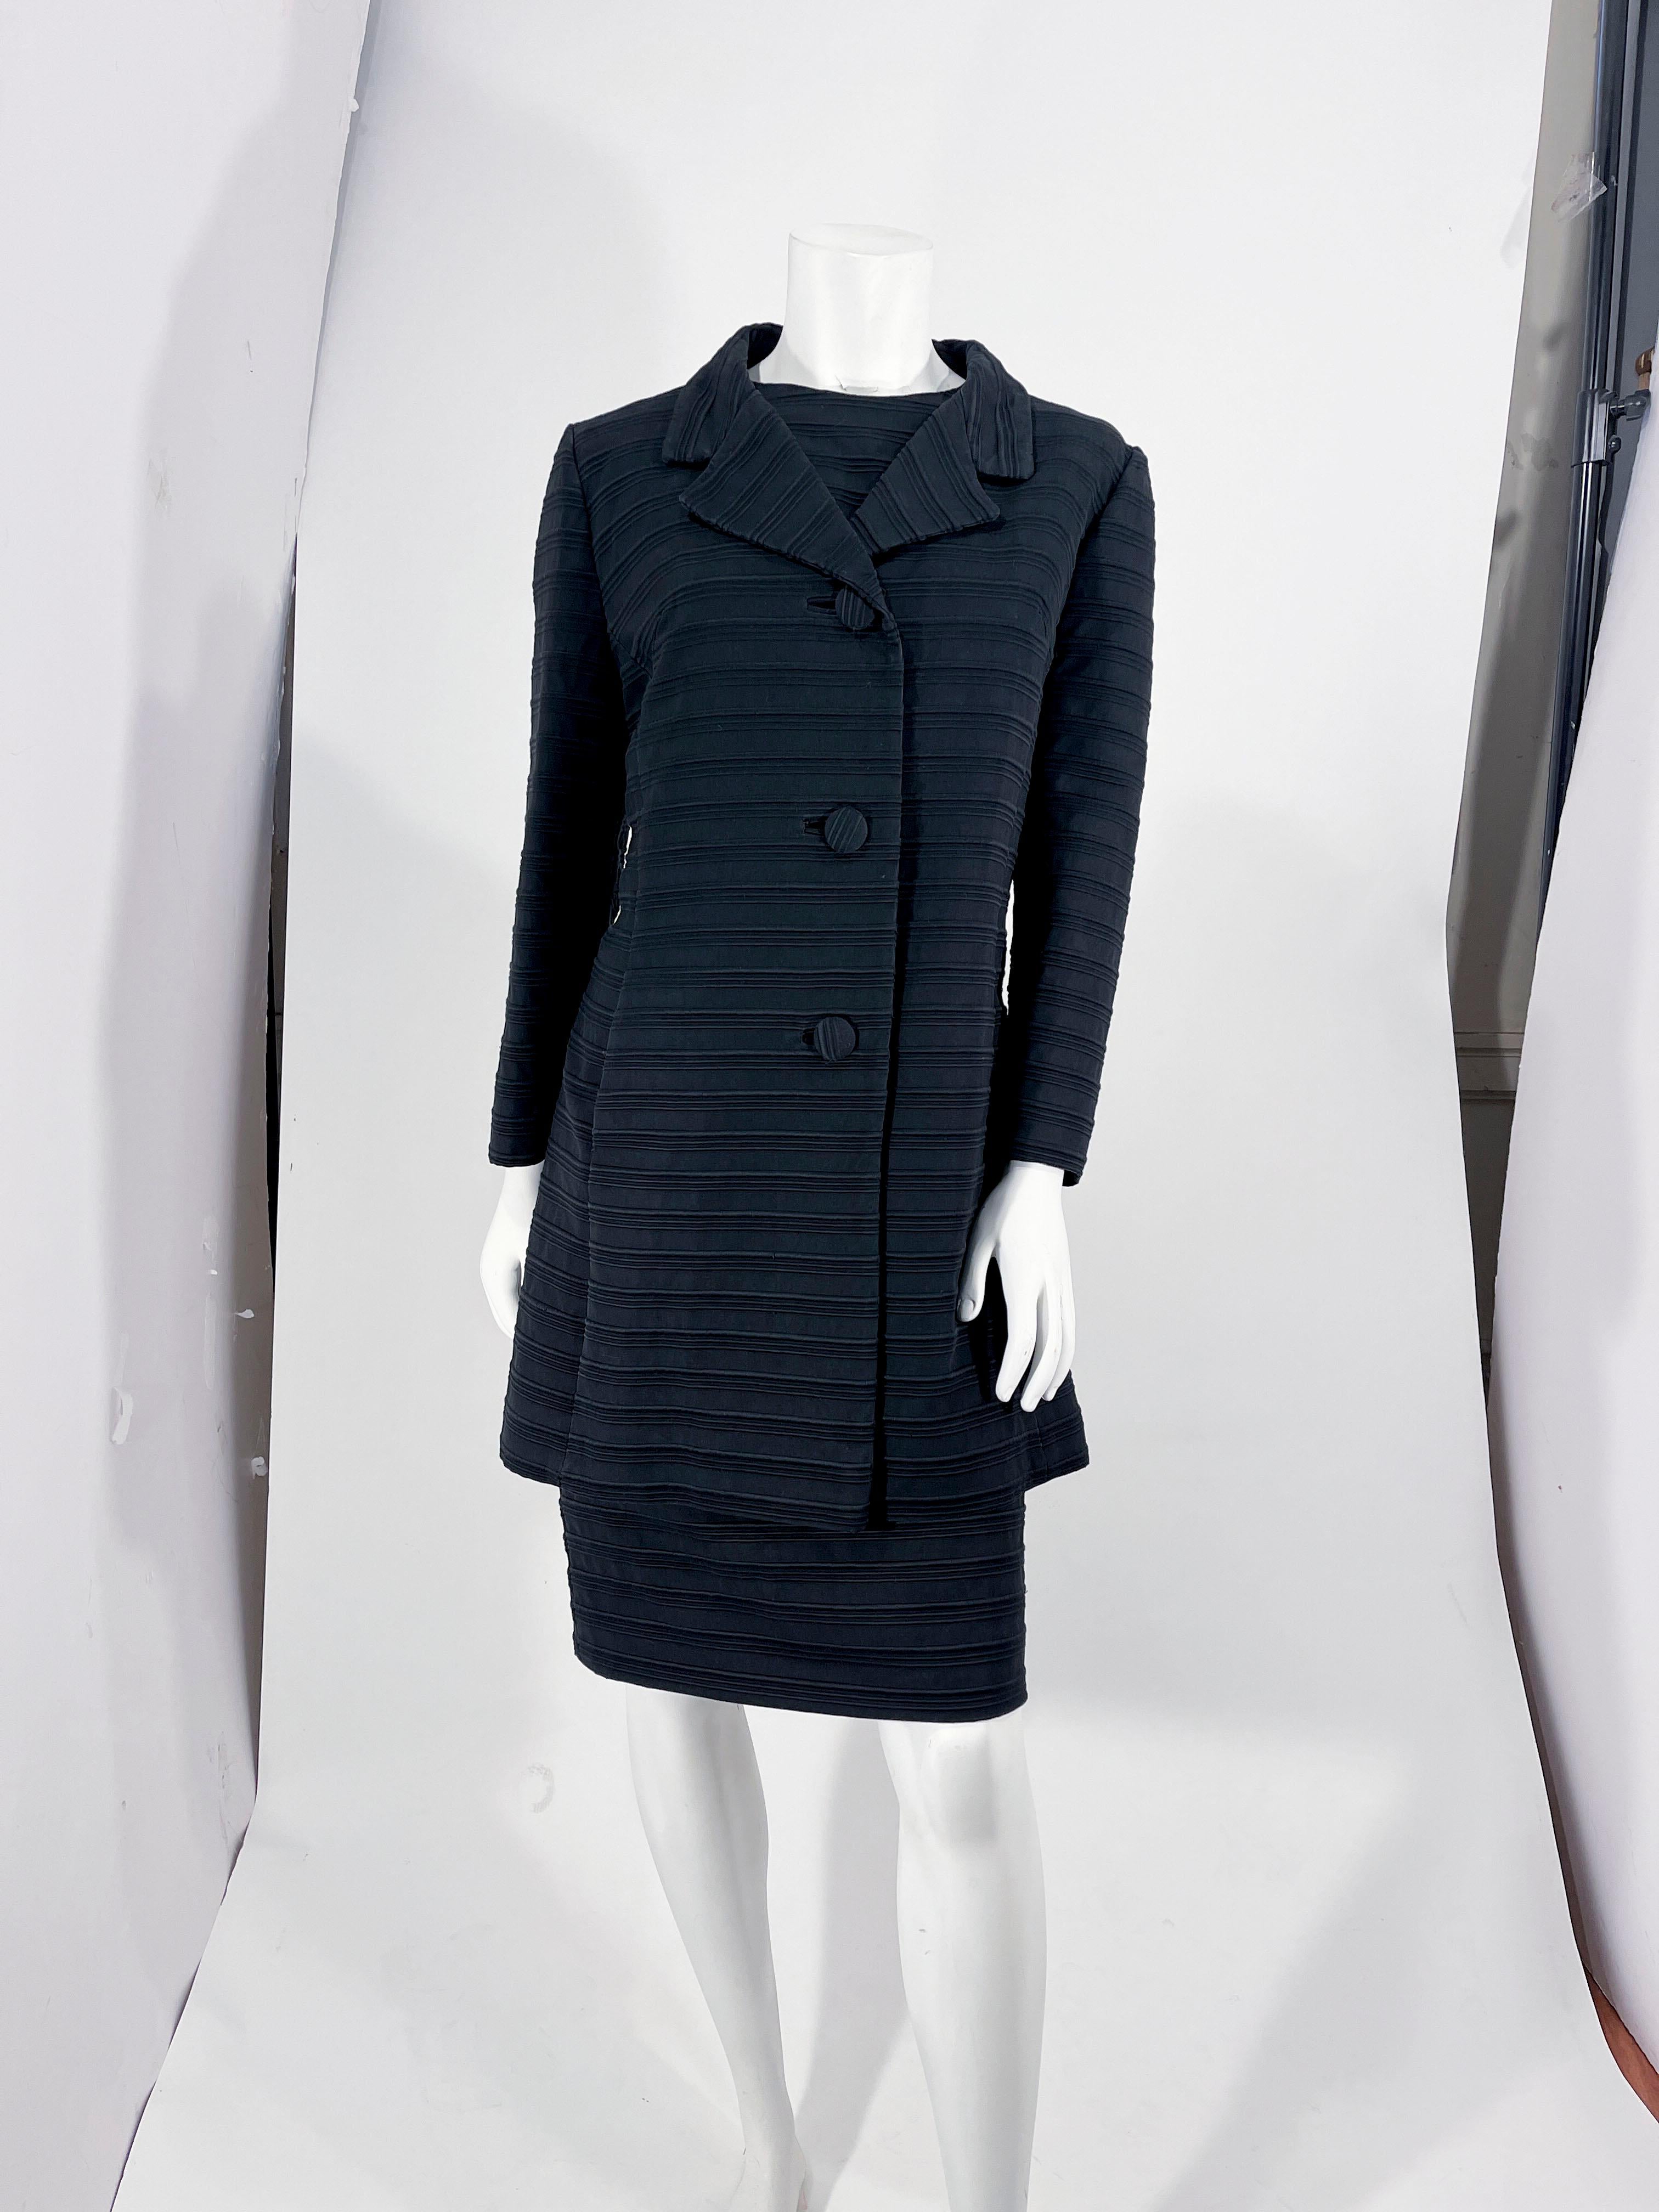 Ensemble robe et manteau assortis de Lilli Ann des années 1960, en tissu noir texturé. Cette robe sans manches est dotée d'un décolleté plongeant et d'une doublure noire intégrale. Le dos de la robe est doté d'une fermeture à glissière en métal.